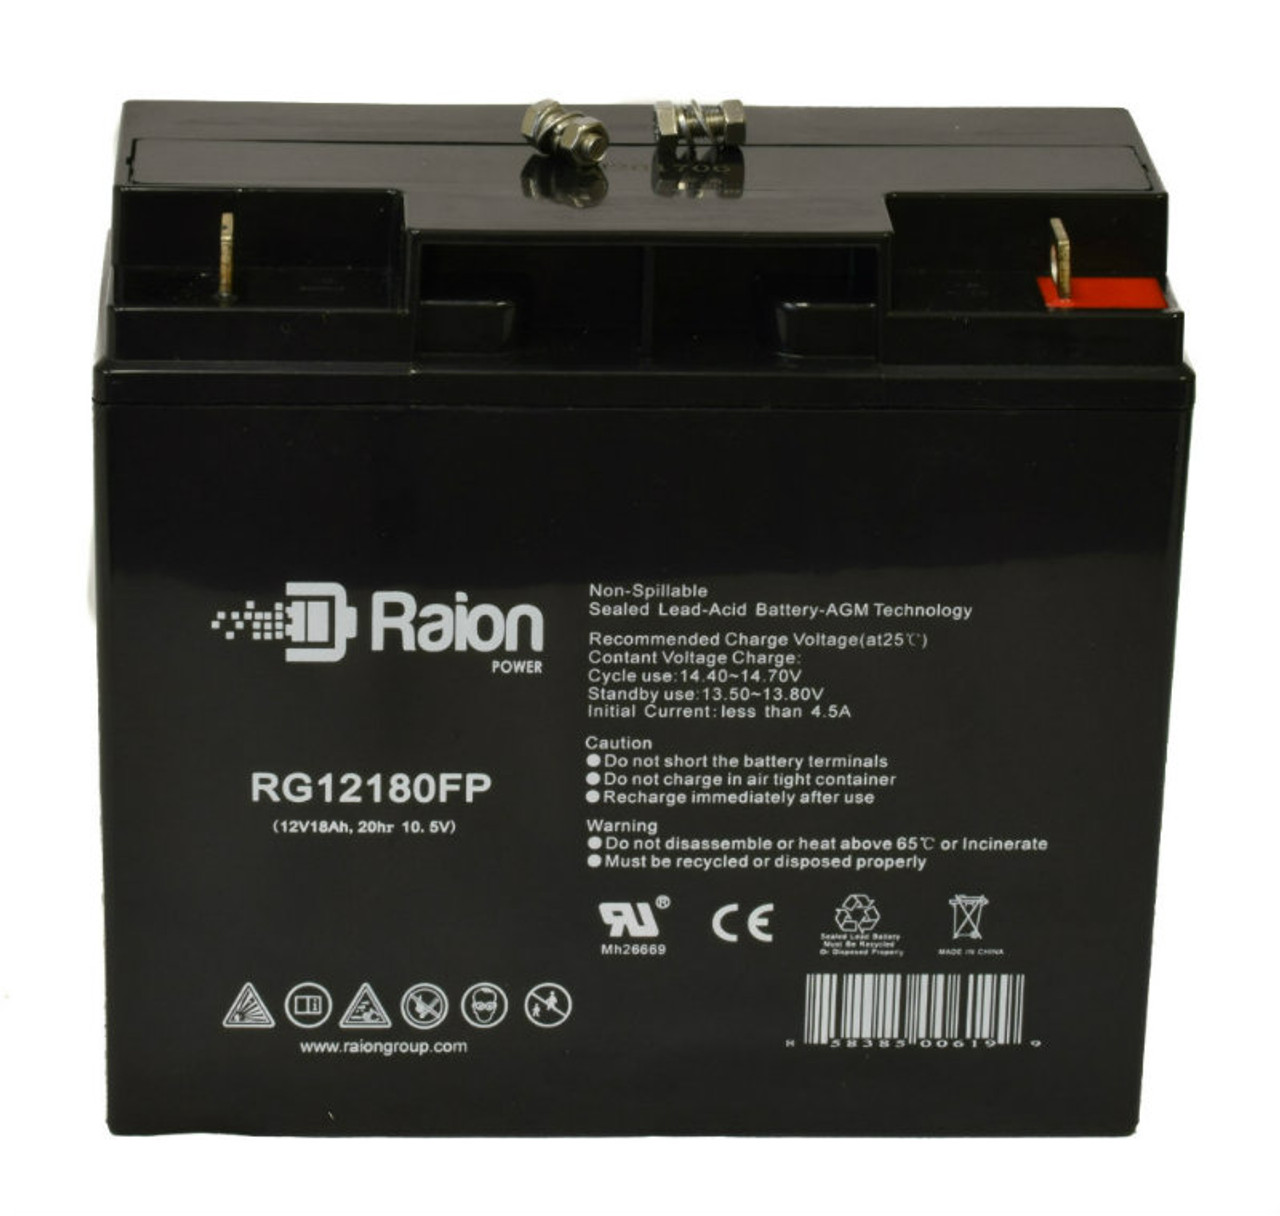 Raion Power RG12180FP 12V 18Ah Lead Acid Battery for Haijiu HG-20-12